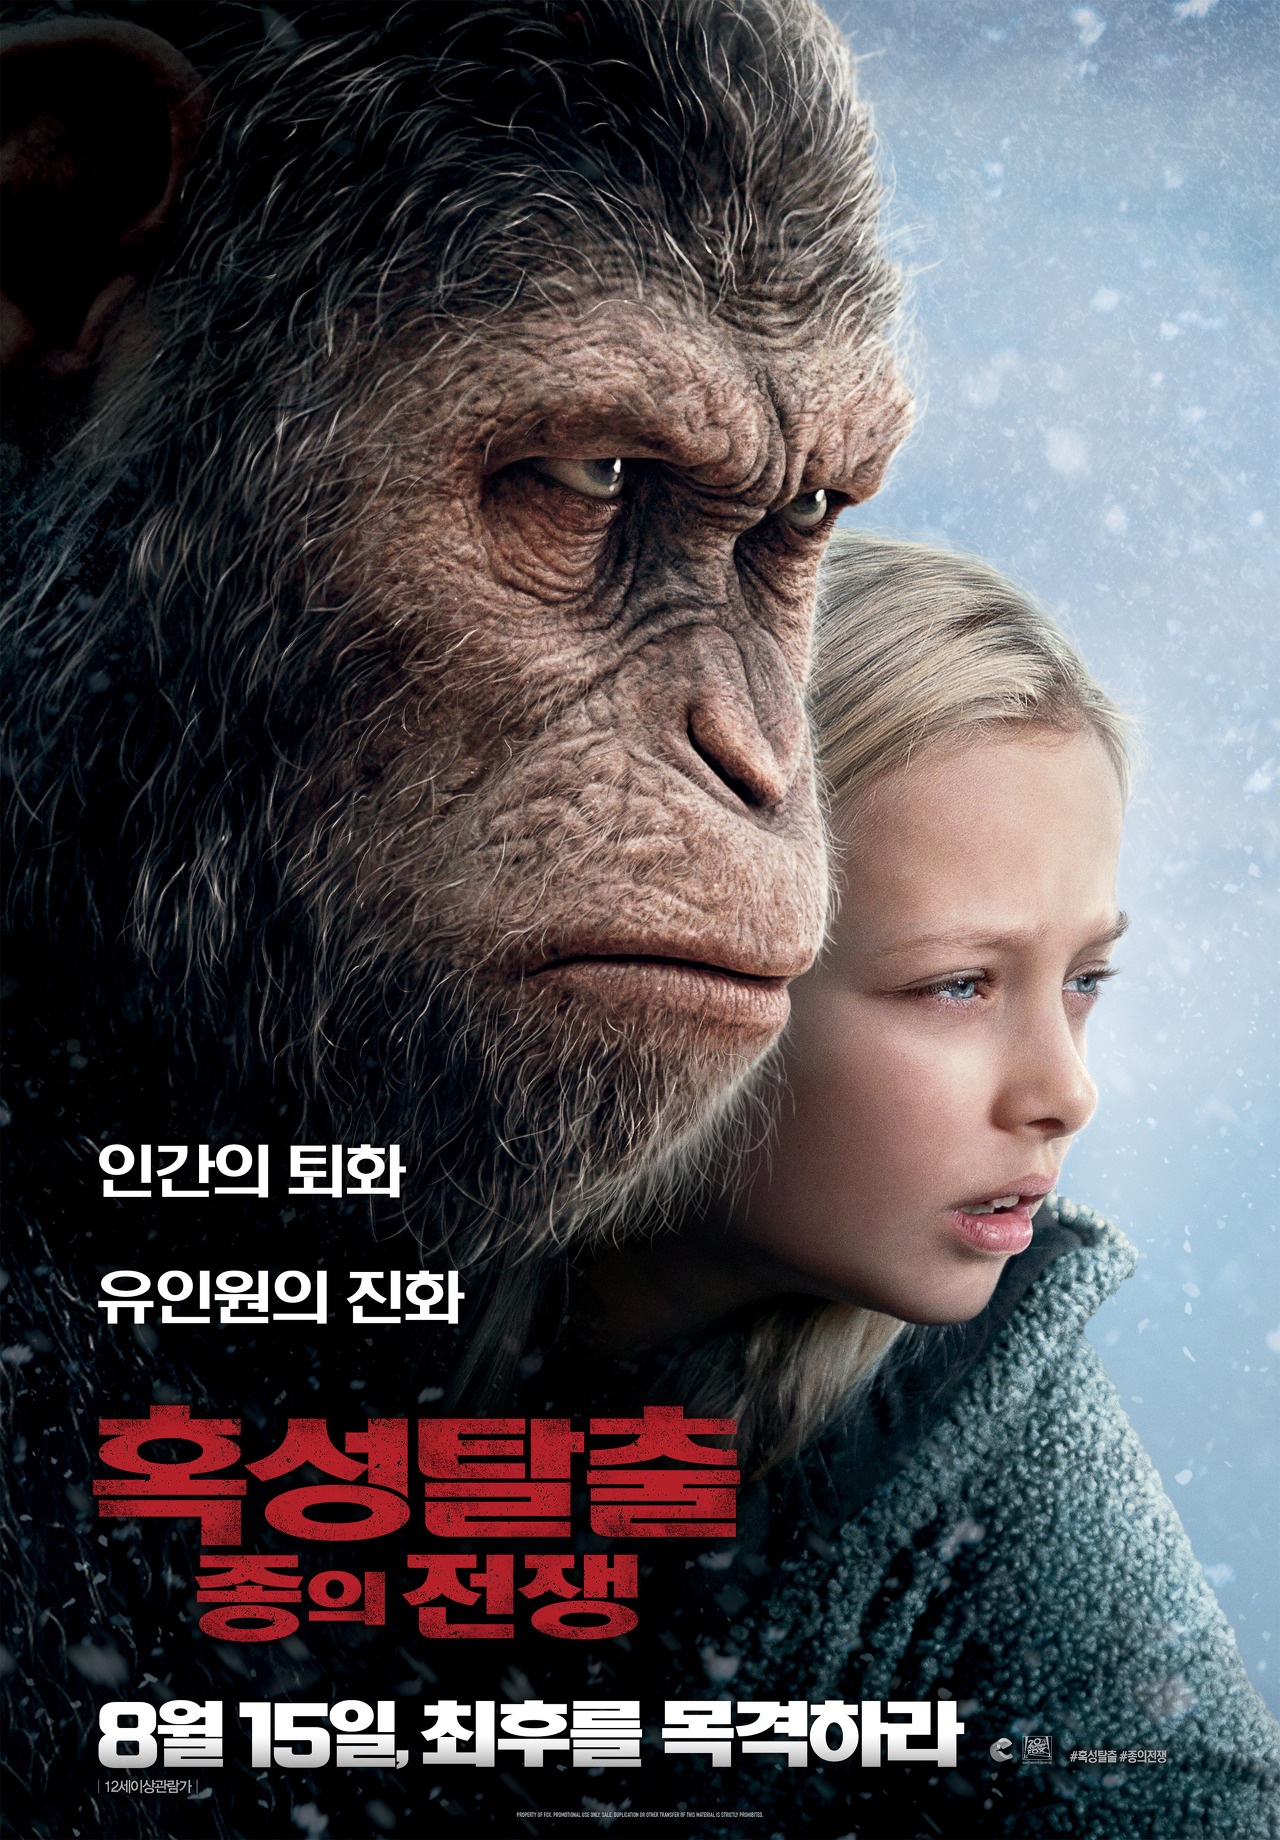 유인원 시저와 여자아이의 얼굴이 나온 영화 혹성 탈출 포스터 모습이다.